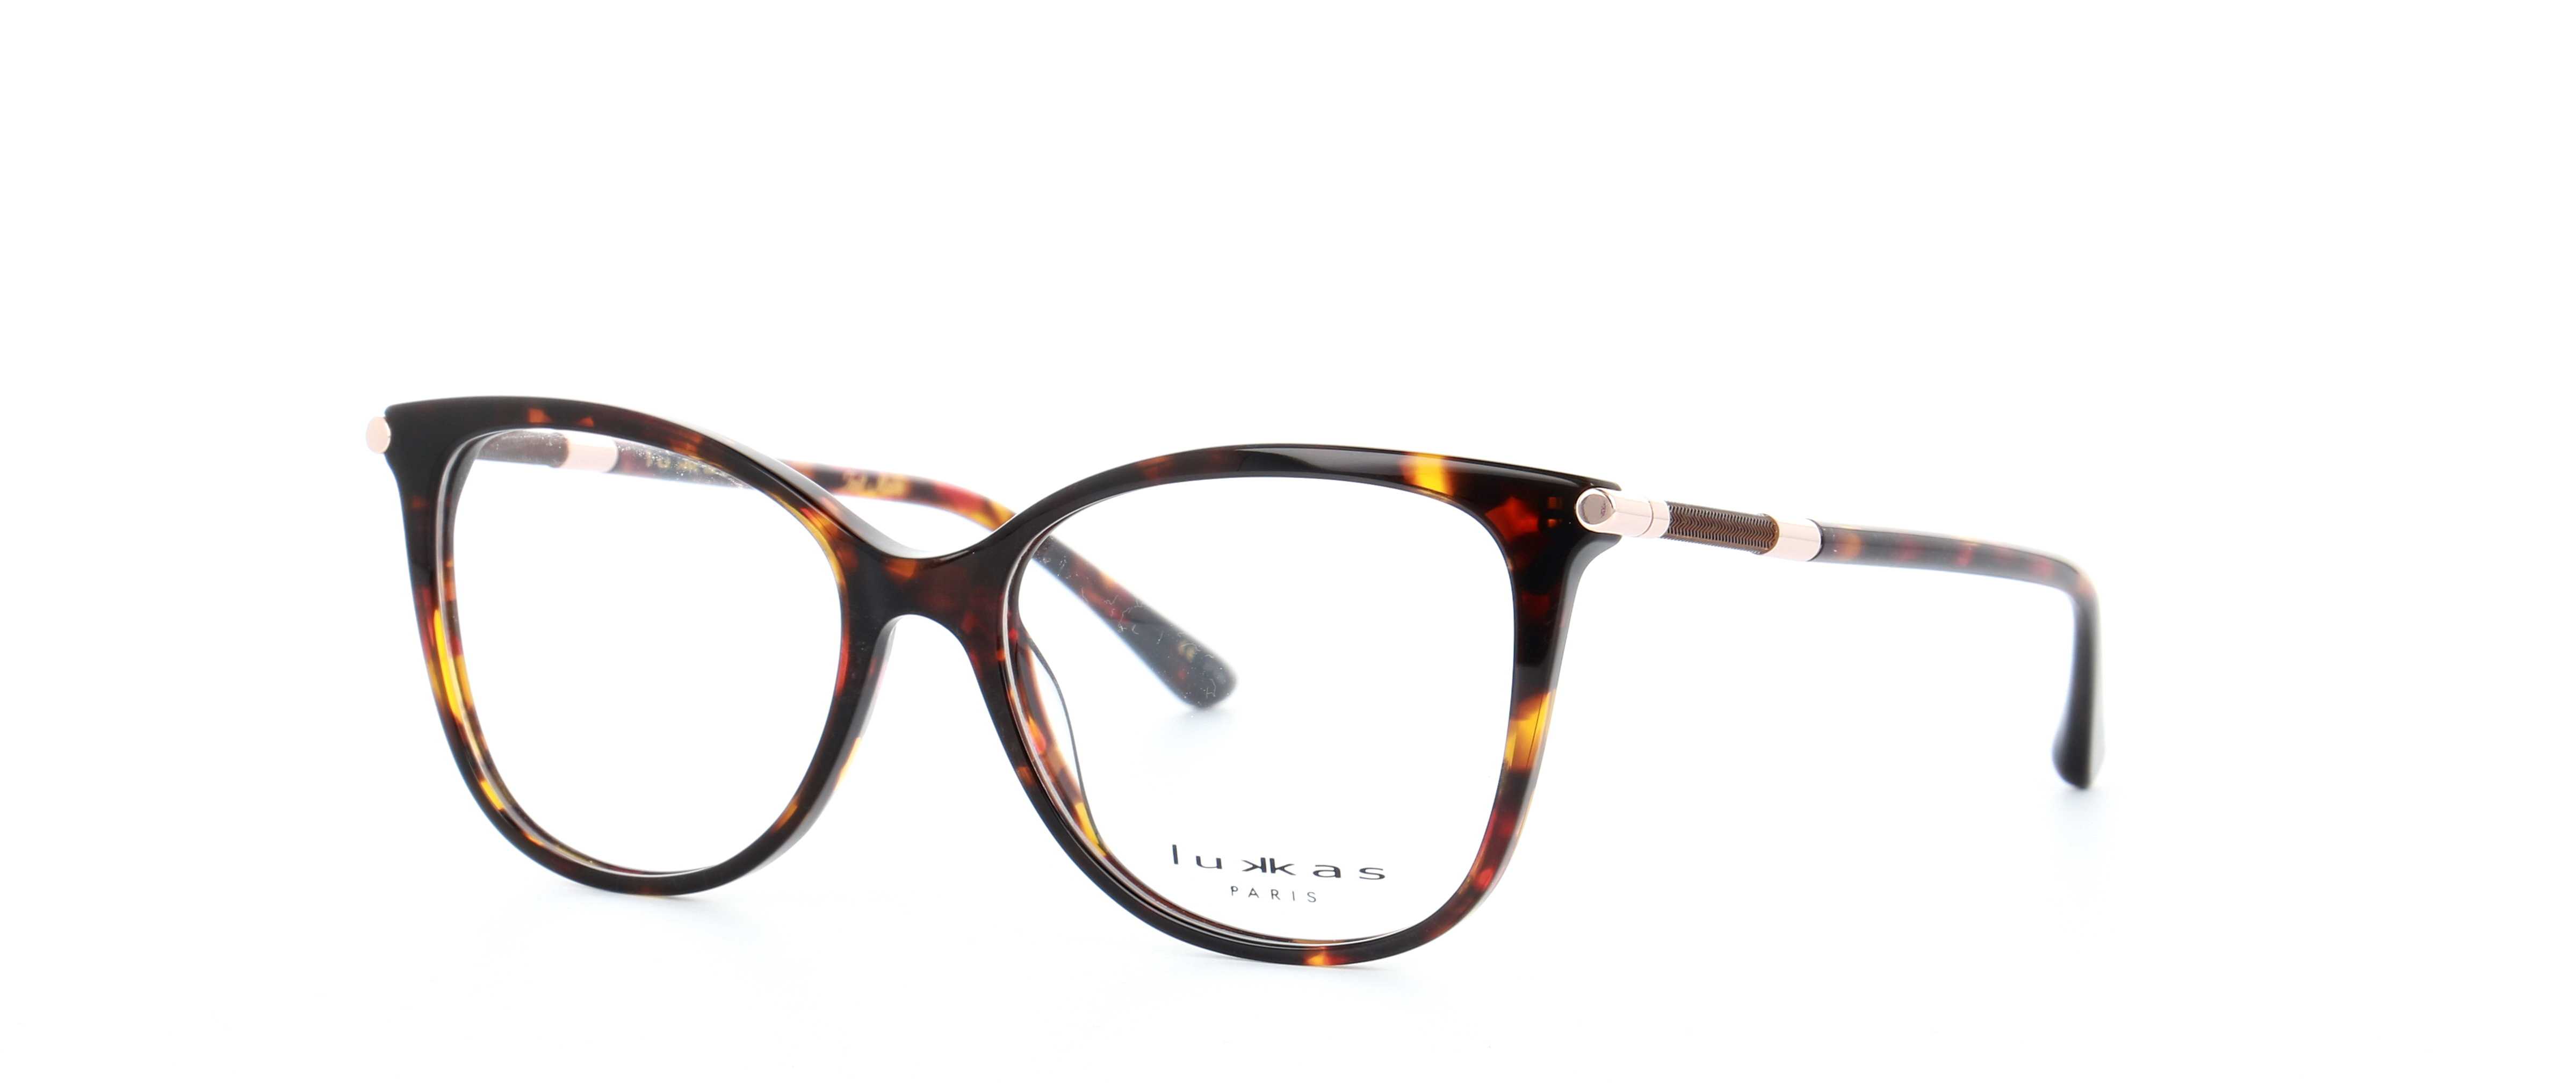 eyeglasses-lukkas-lu-2113-ecai-53-16-woman-ecaille-cat-eye-full-frame